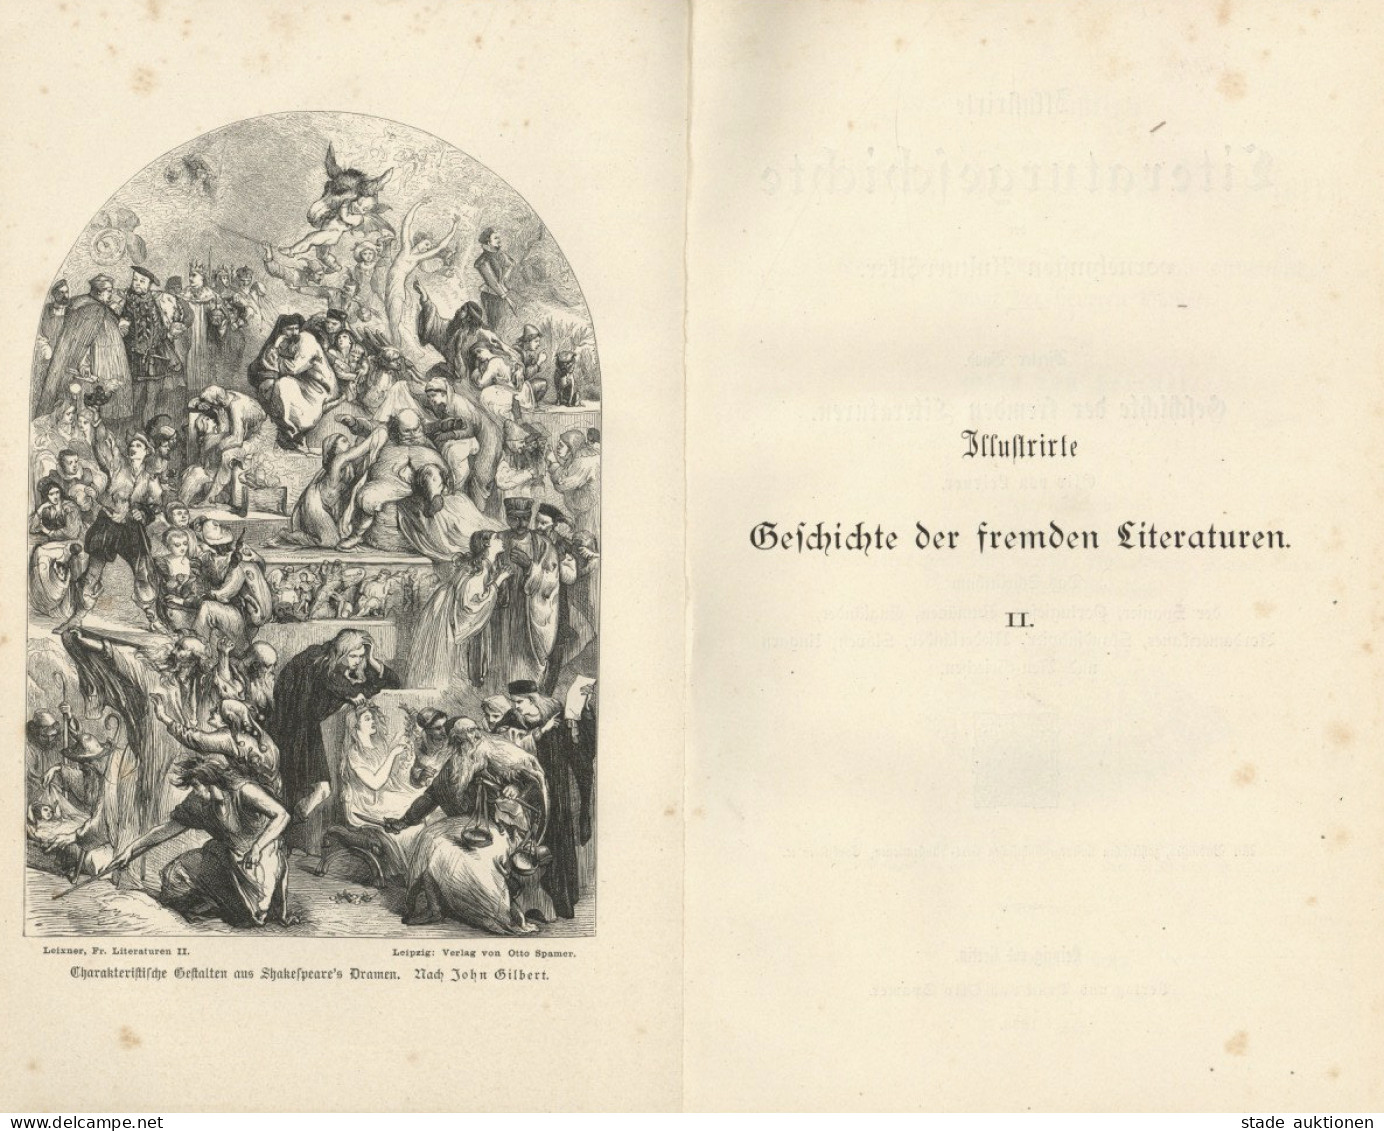 Buch Lot Mit 2 Büchern Illustrierte Geschichte Der Fremden Literaturen Band I Ud II Von Leixner, Otto 1883, Verlag Spame - Old Books